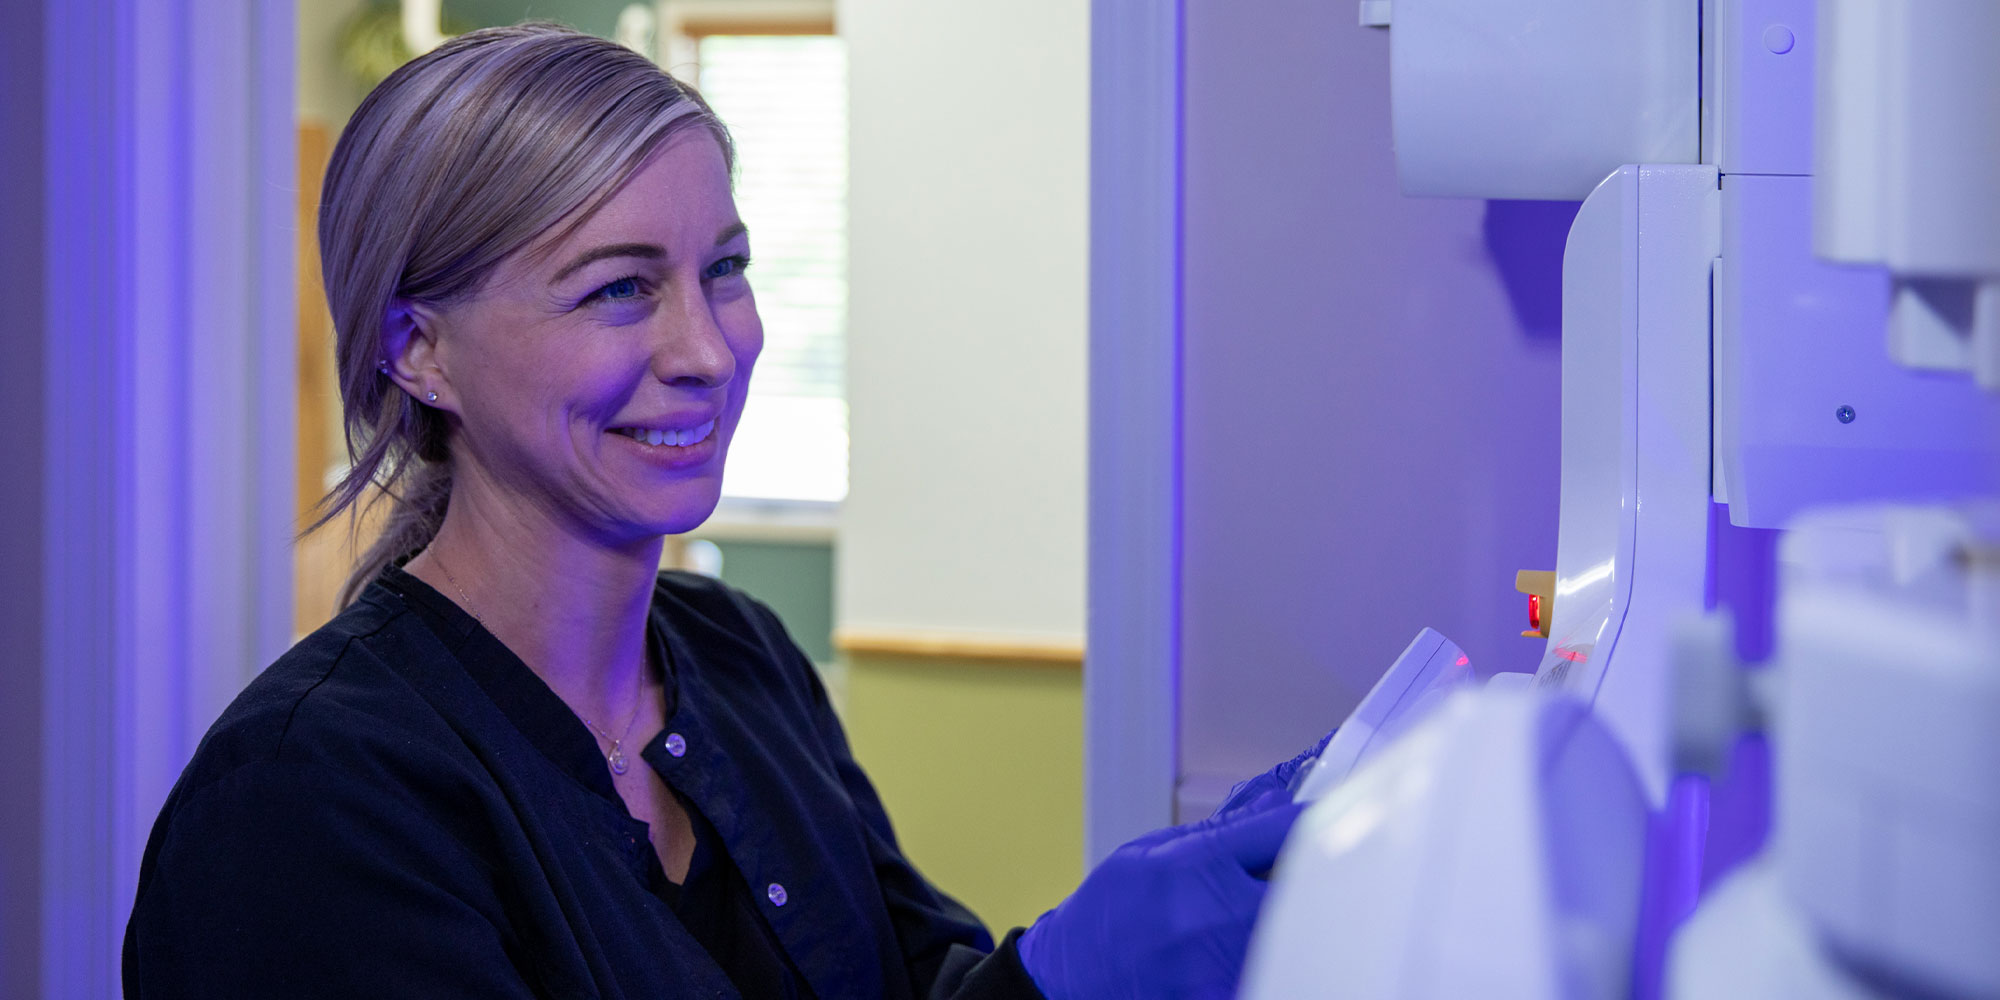 staff member overseeing 3D scanning for patient's dental procedure